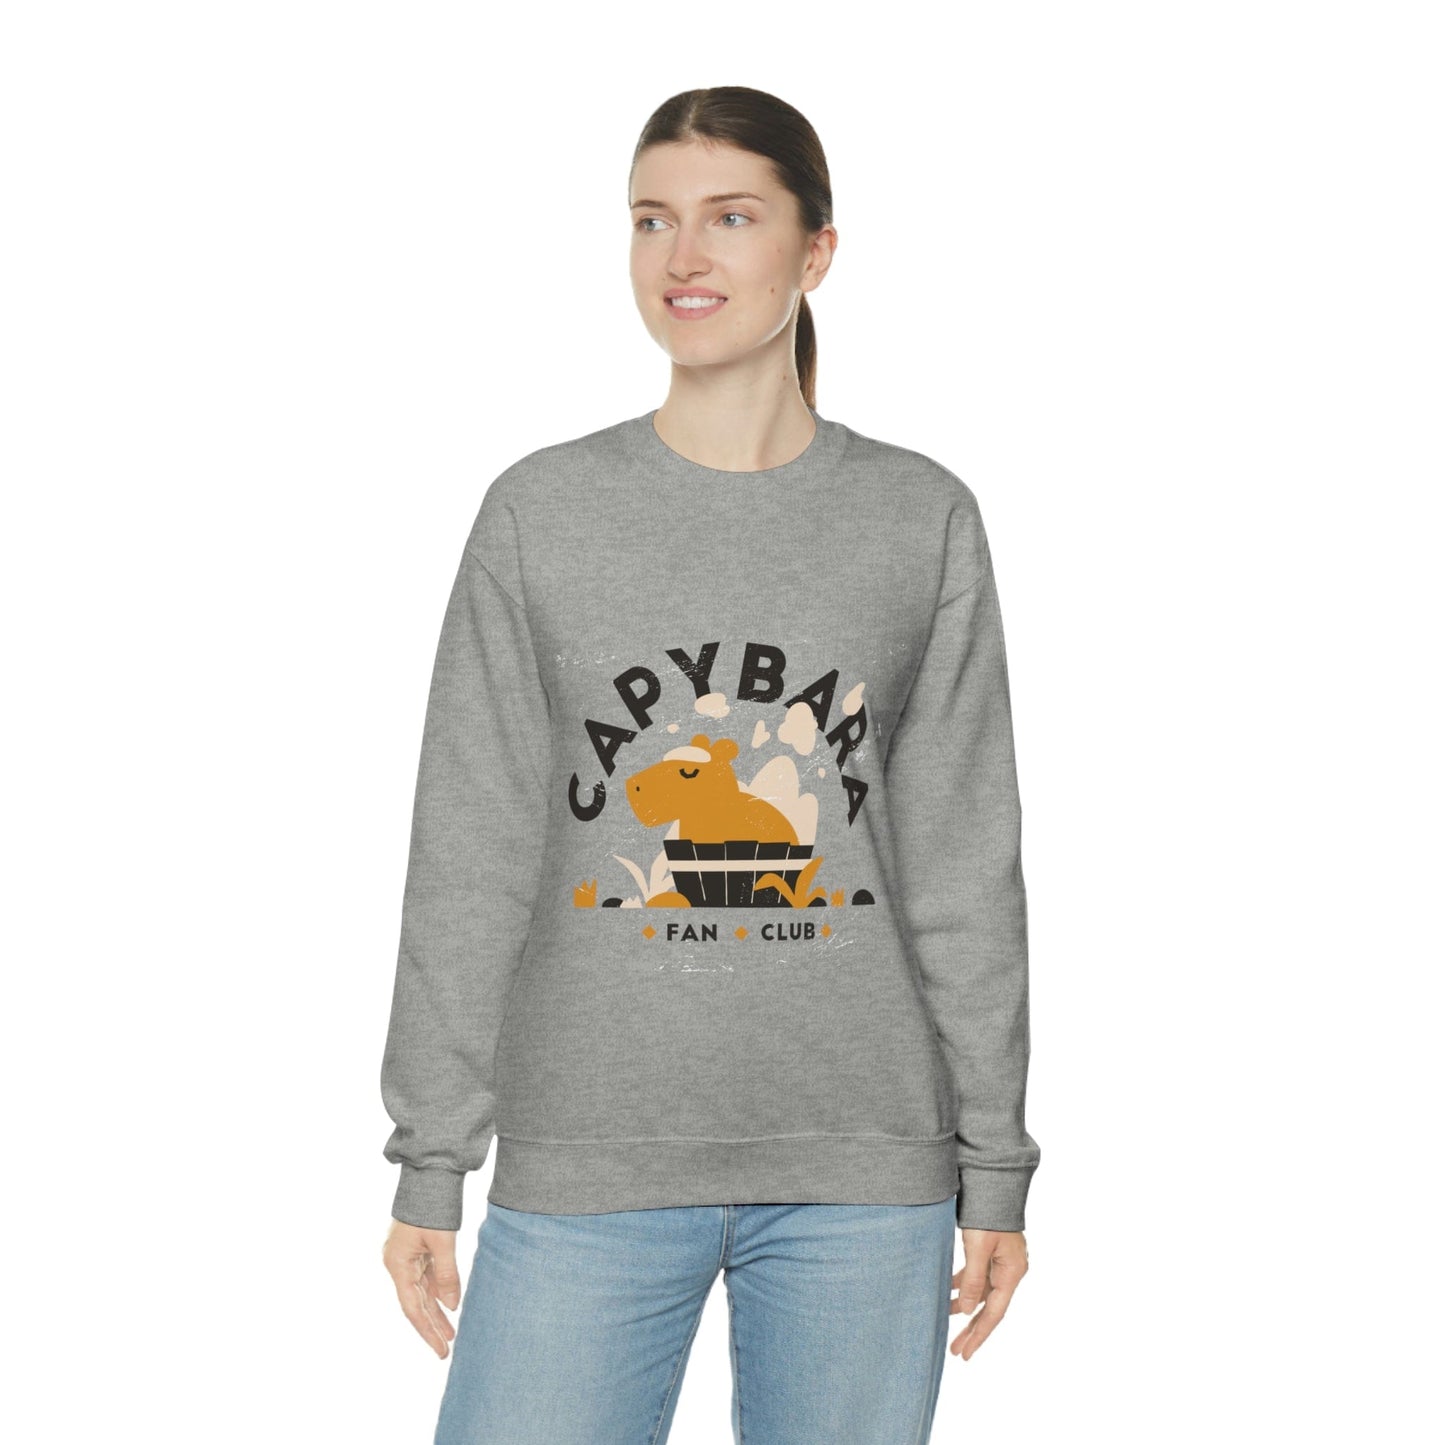 Capybara Fan Club - Unisex Sweatshirt